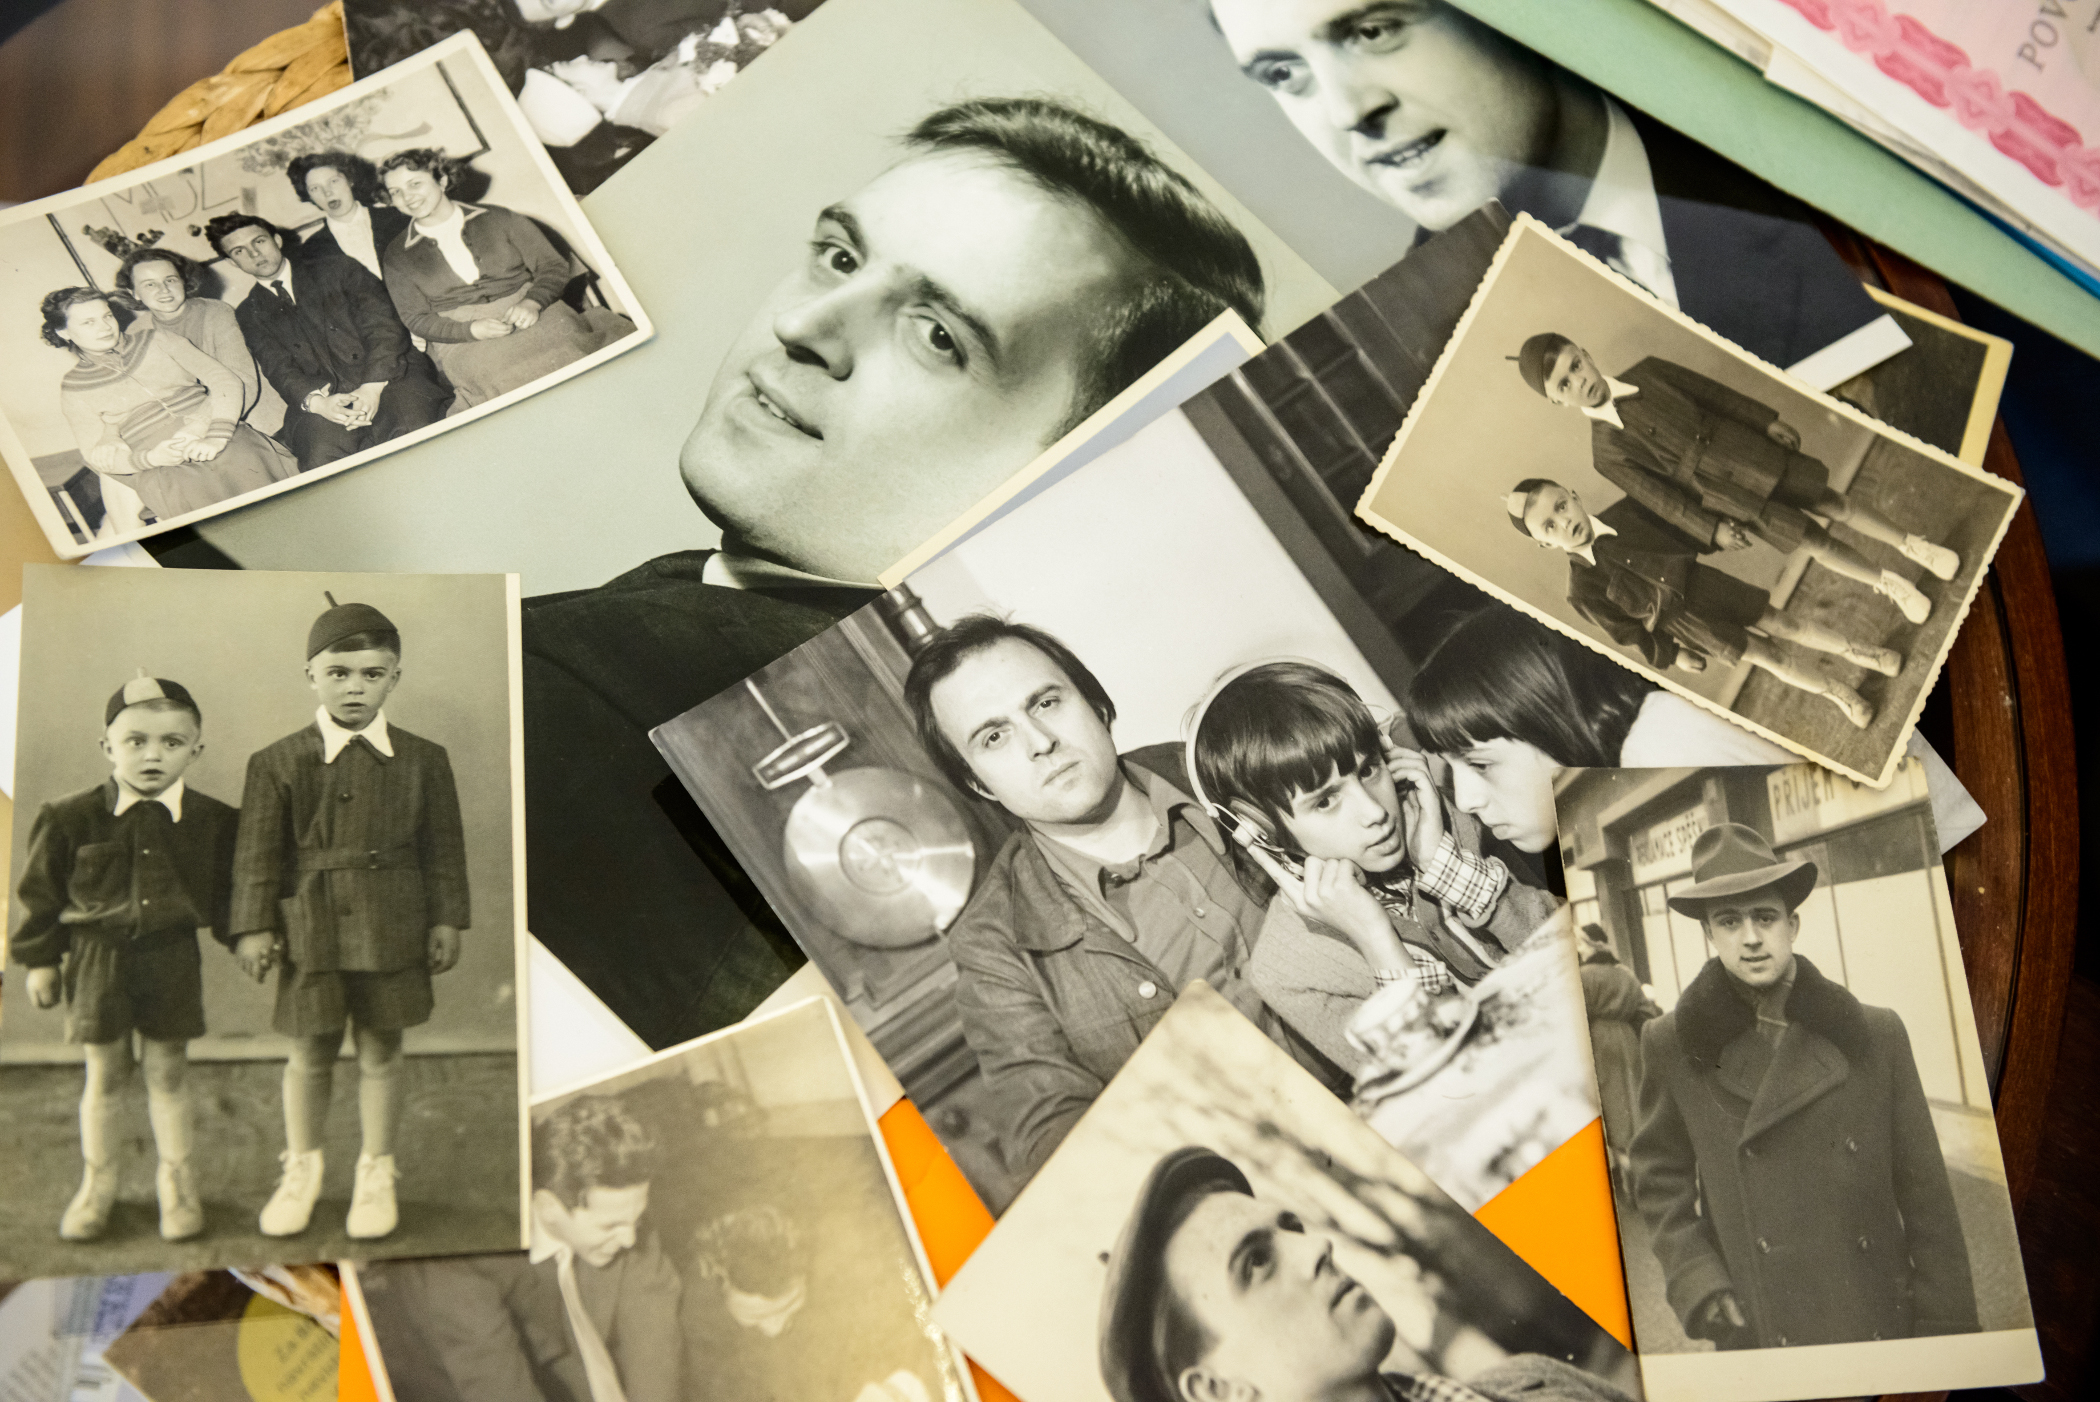 Milena ukazuje fotografie svého otce, zcela vlevo je fotografie Jiřího Gruši z dětství, spolu s jeho bratrem